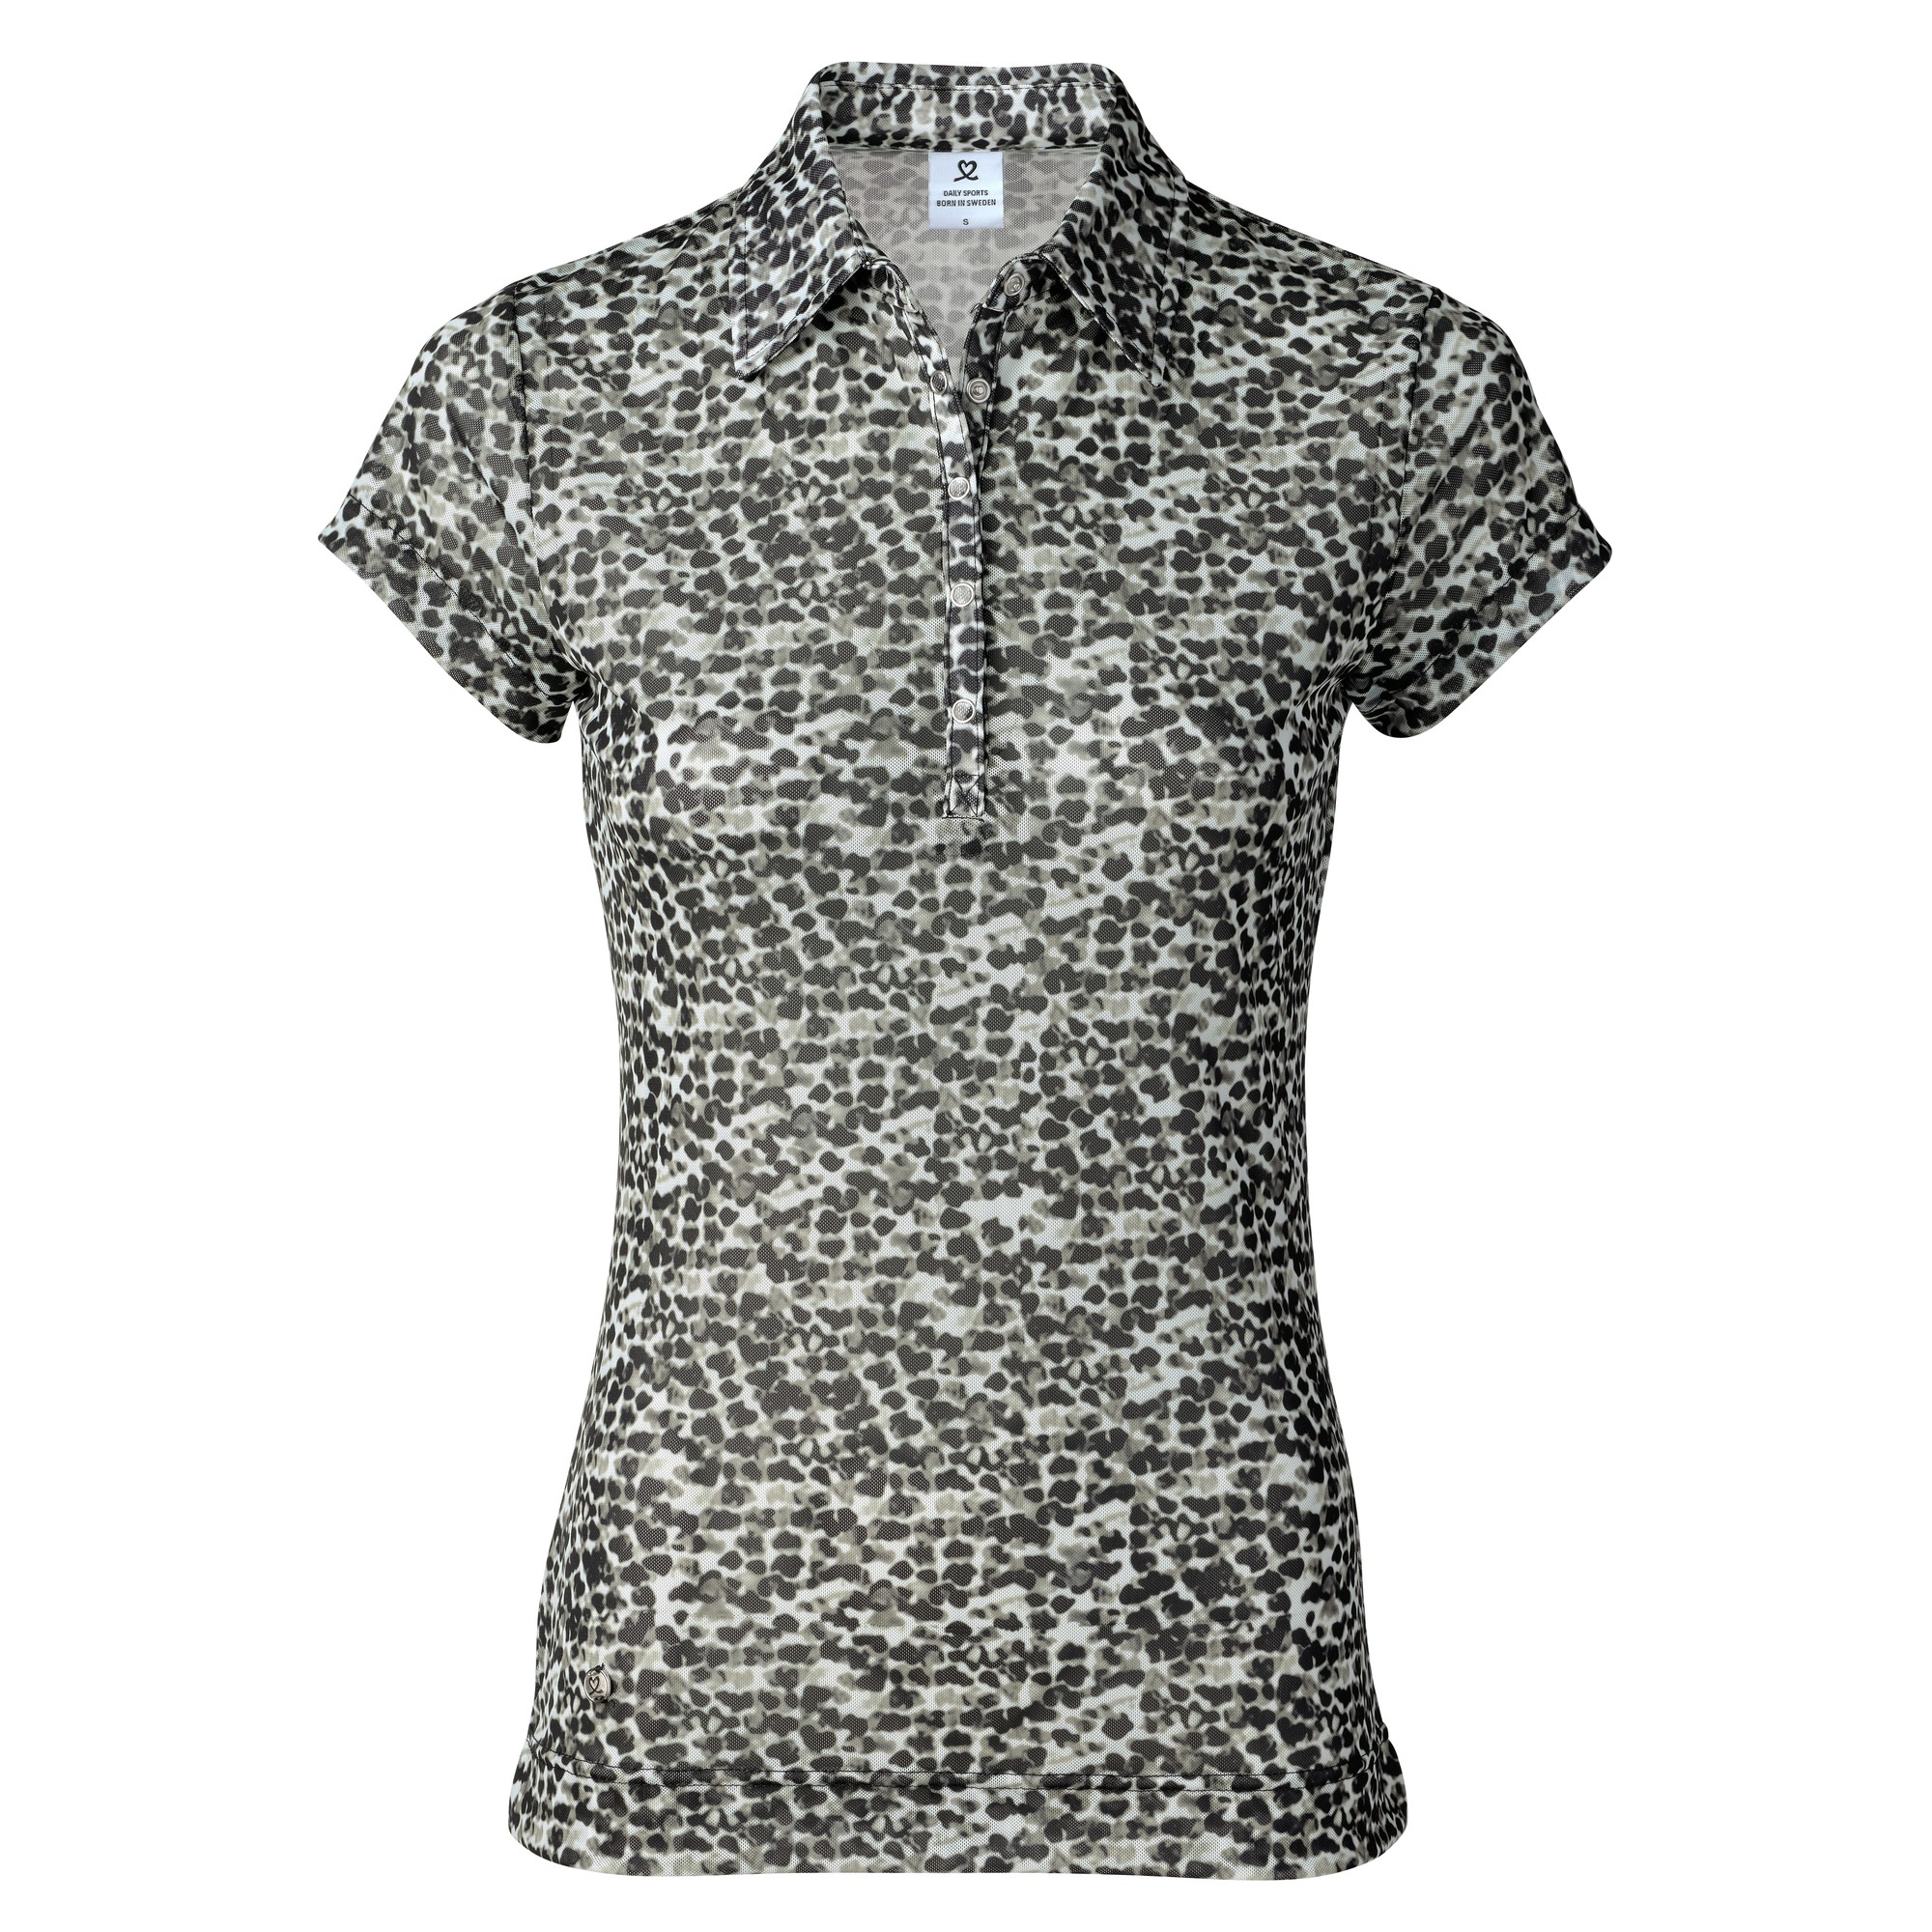 leopard print golf shirt